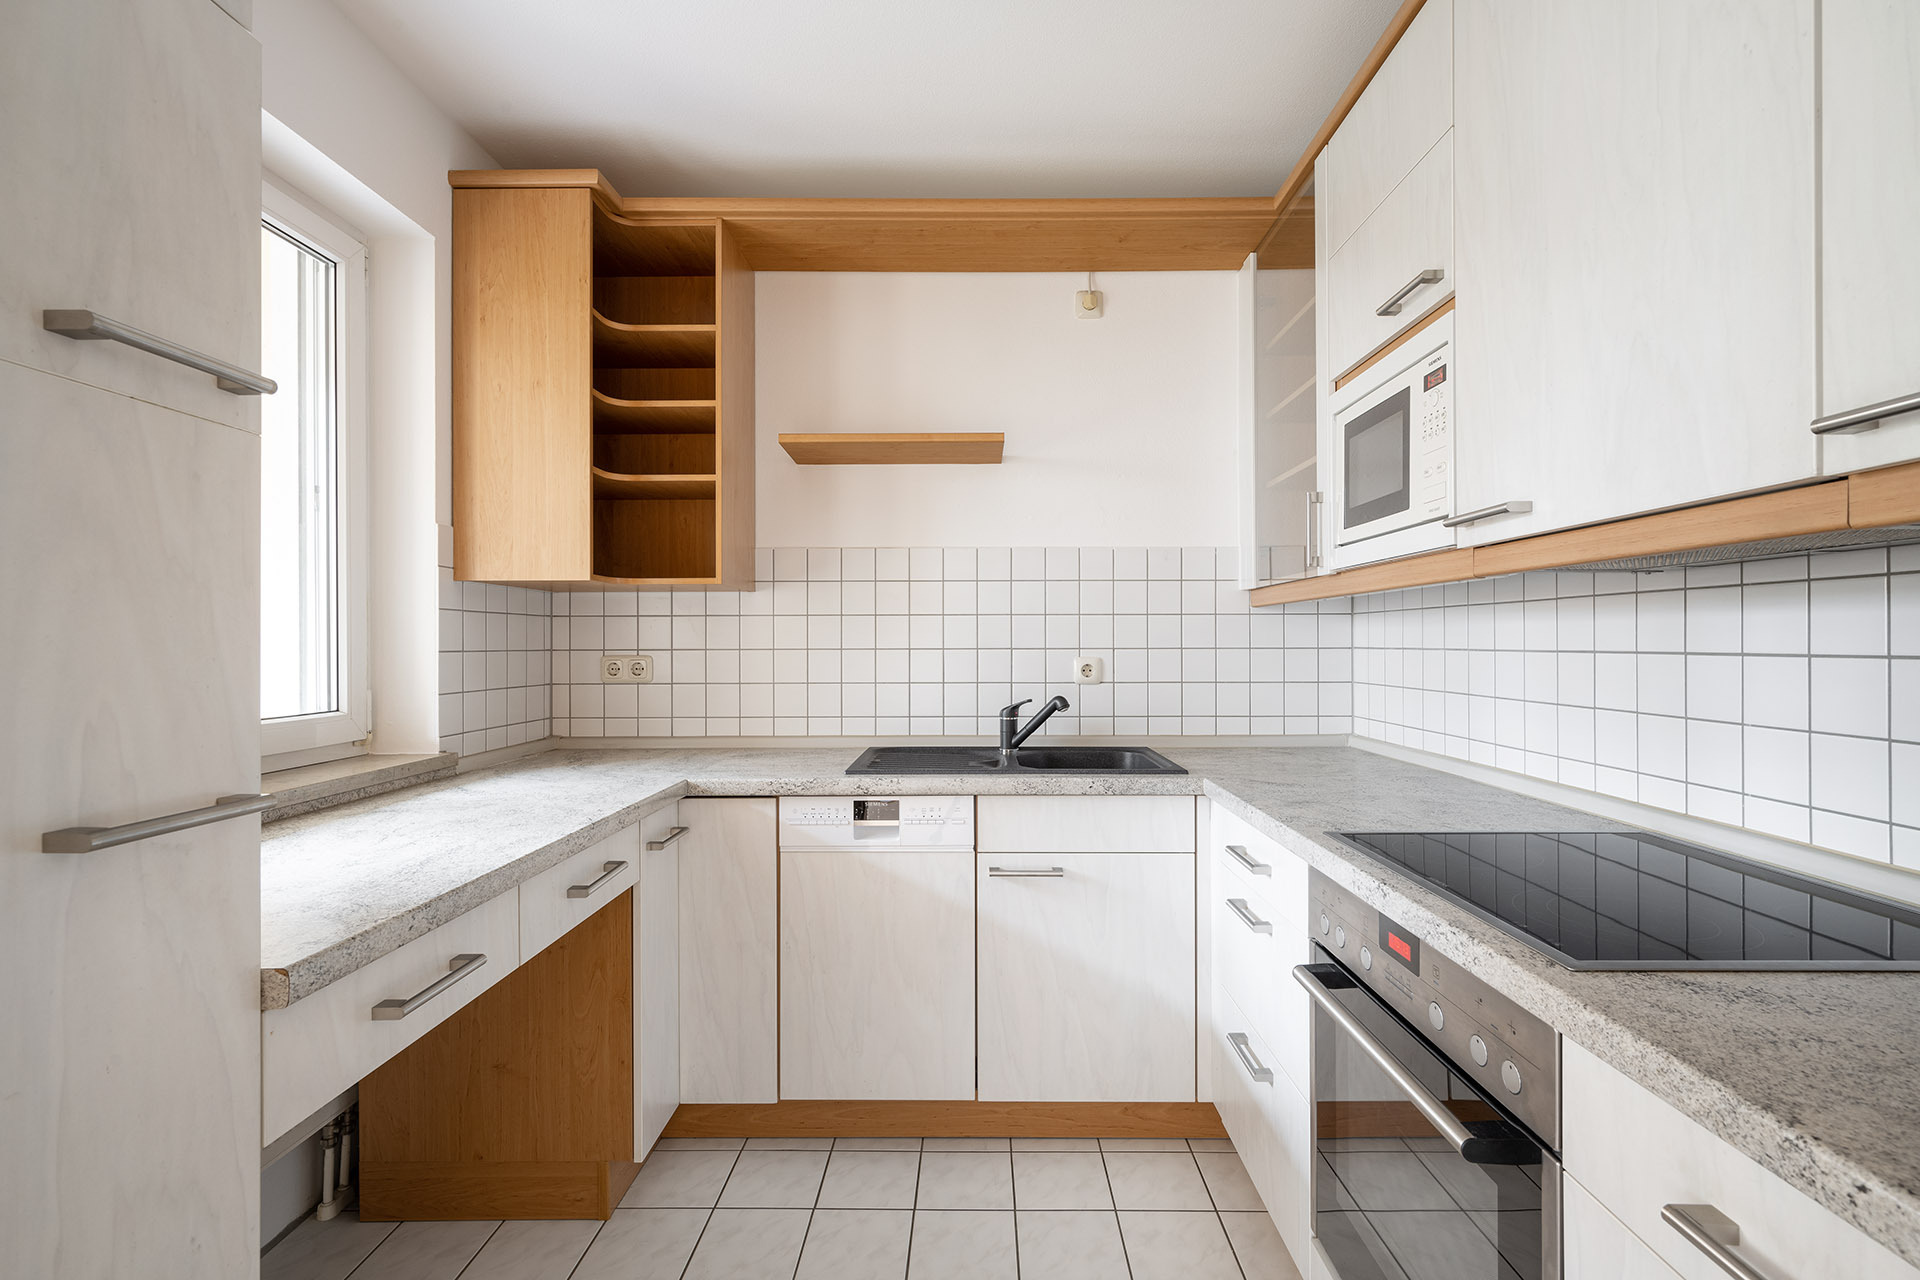 Zauberhafte 3-Zimmer Gartenwohnung in Erding/Langengeisling - Einbauküche mit Markengeräten